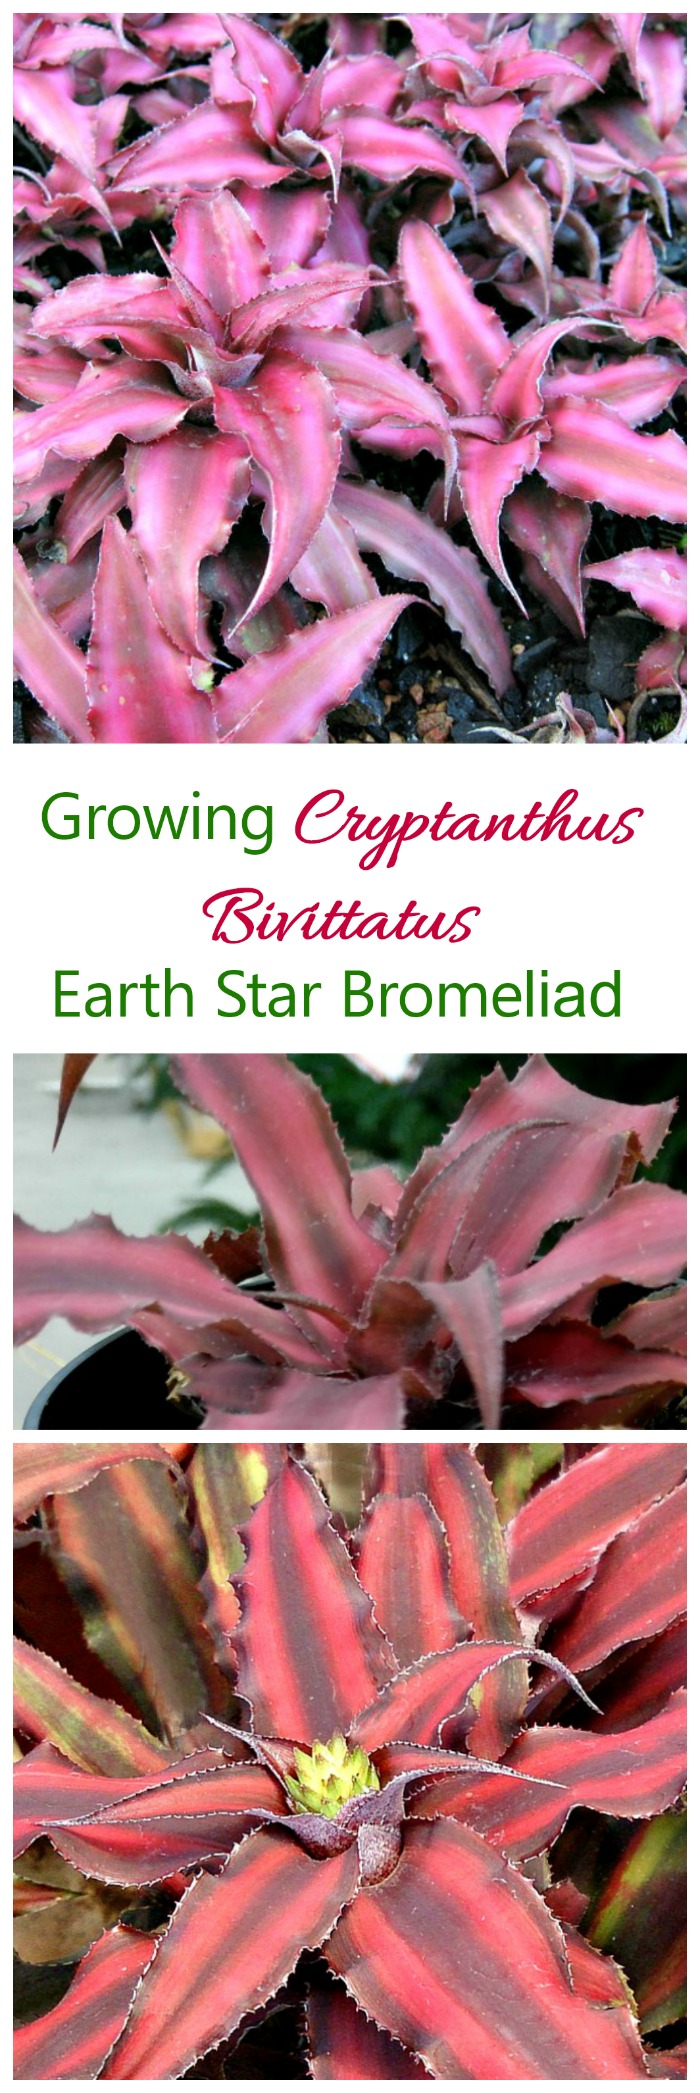 Cryptanthus Bivittatus Growing Red Star Bromeliad